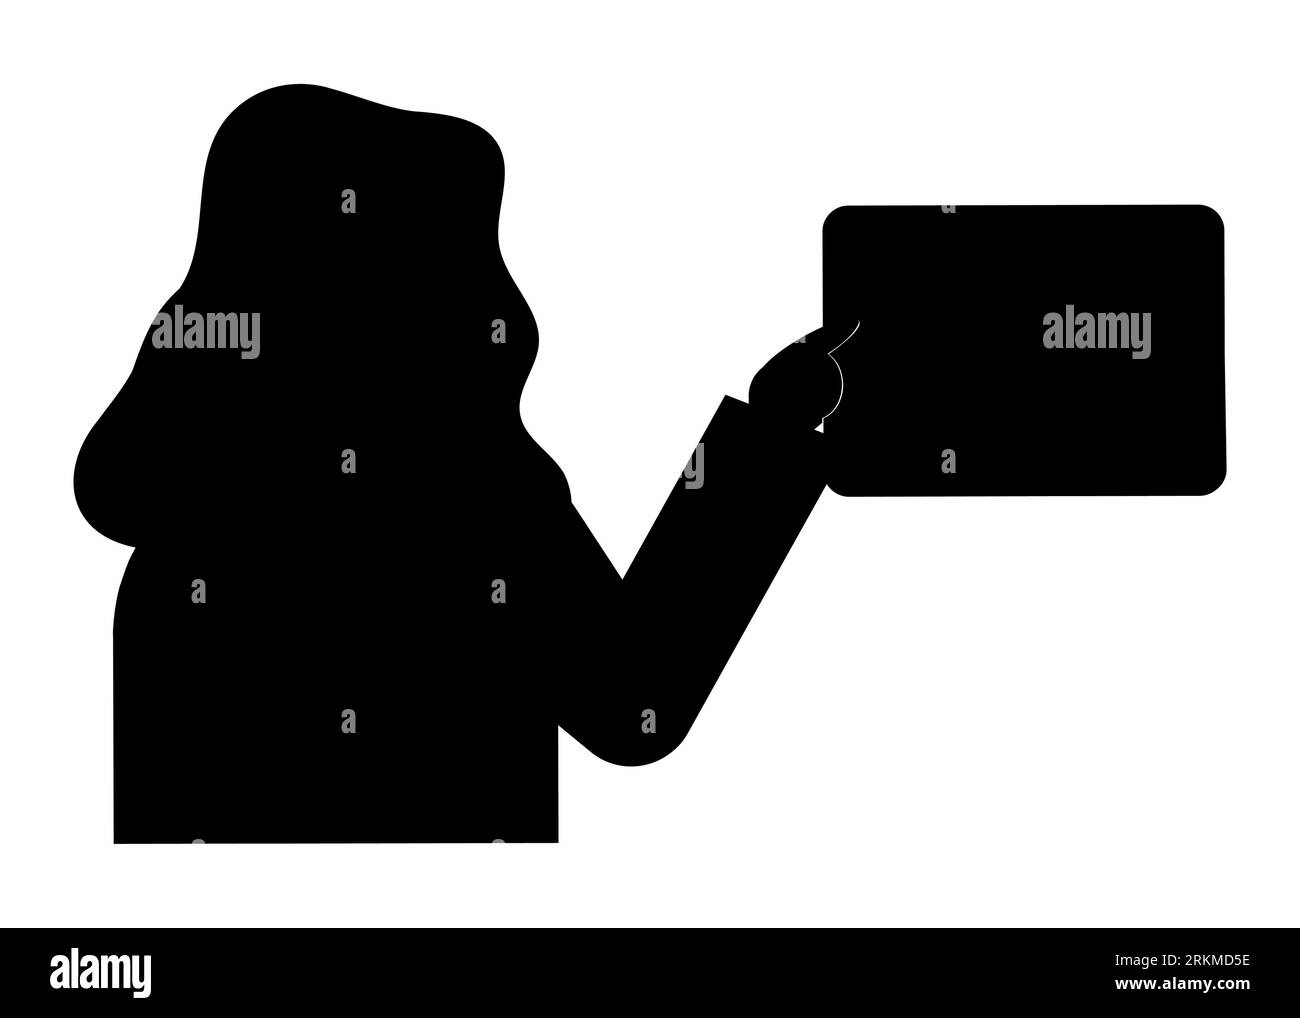 Silhouette noire d'une femme entrant le mot de passe, système de sécurité à domicile, illustration vectorielle isolée sur un fond blanc Illustration de Vecteur